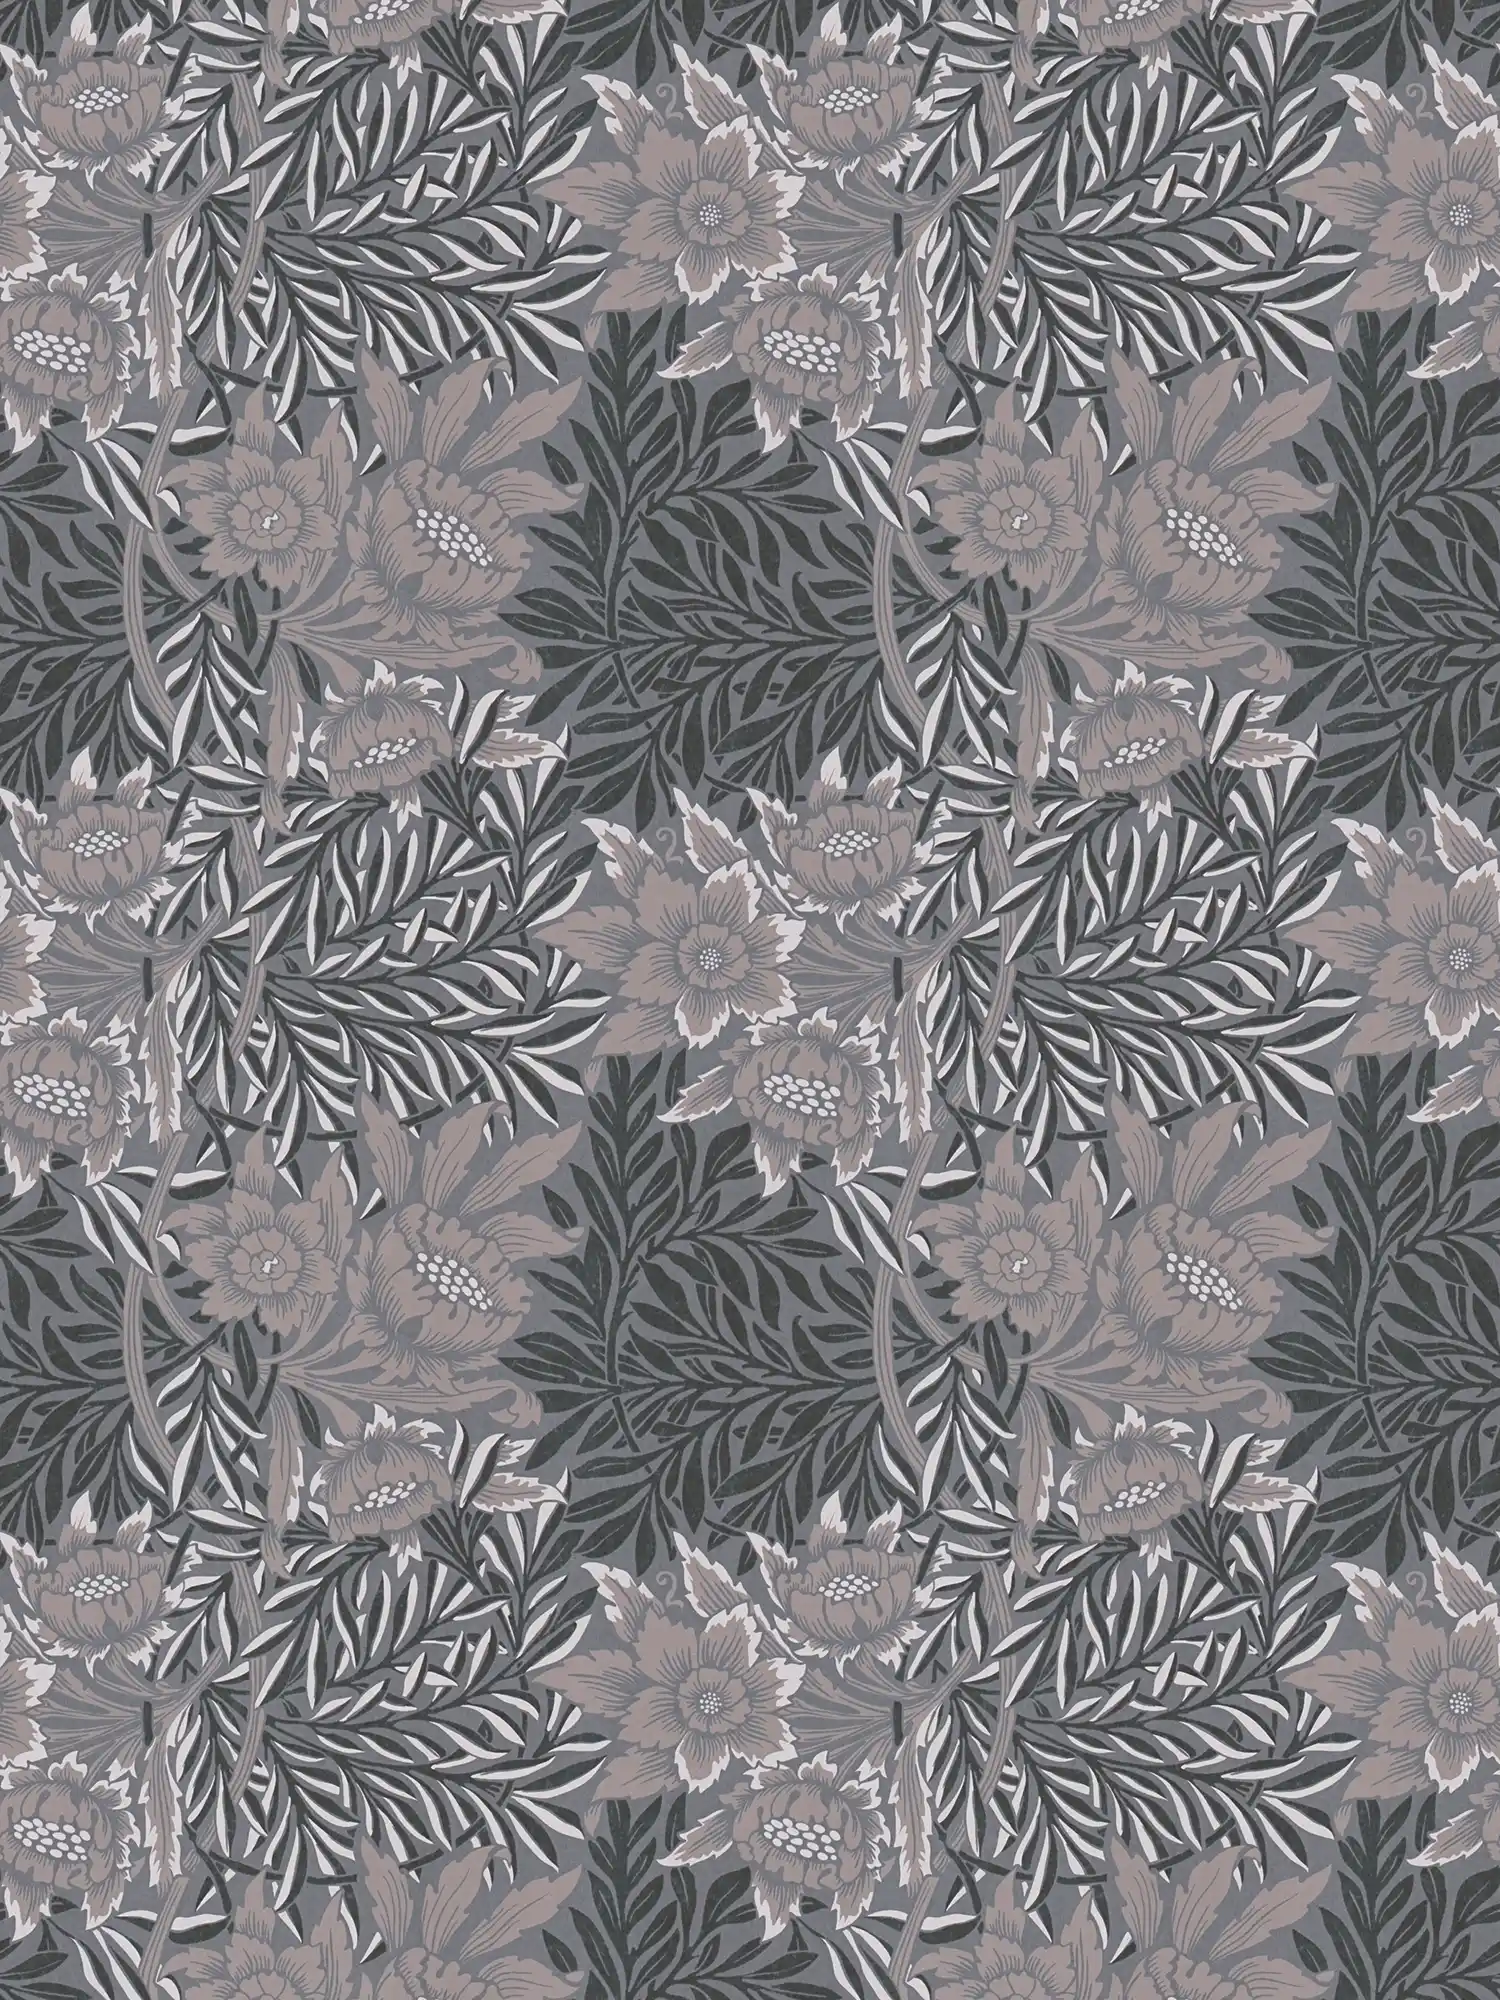 Floral wallpaper with large flower and leaf tendrils - grey, beige, black
